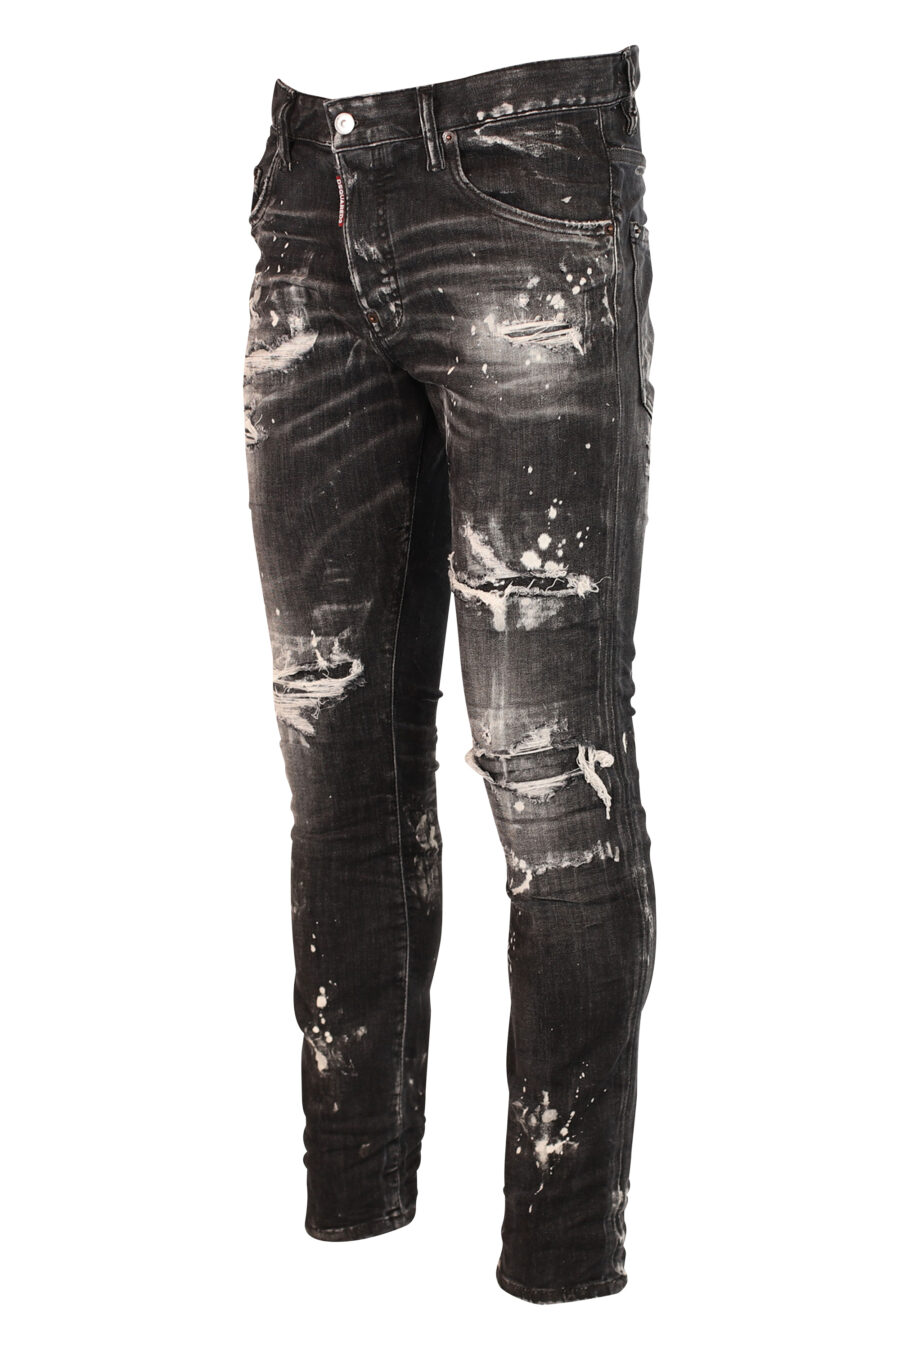 Pantalon skater en jean noir usé et déchiré - 8052134938102 2